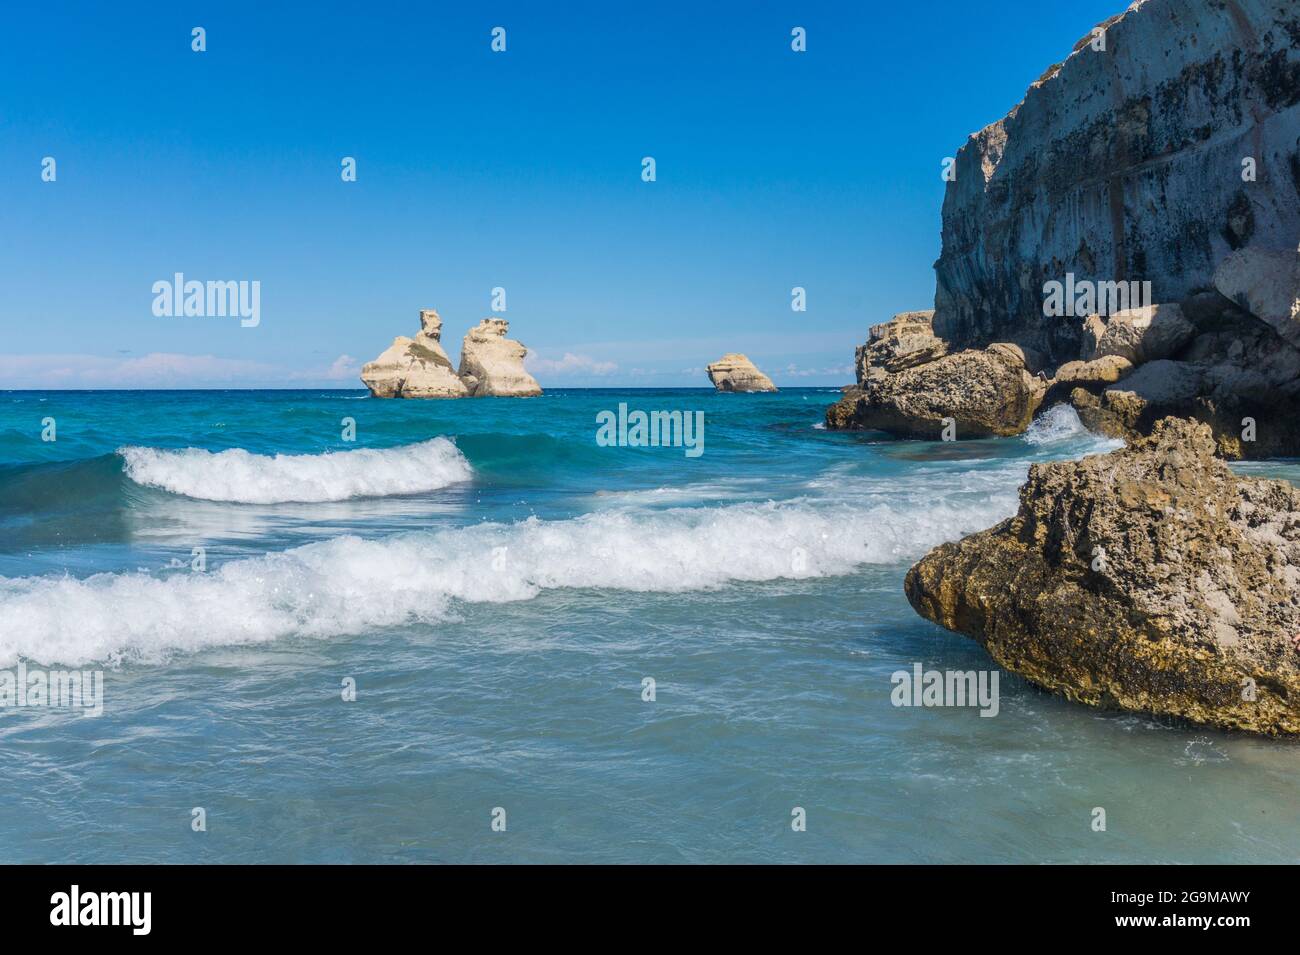 Spiaggia di Torre dell'Orso, Costa Salentina, Lecce, Puglia, Italia. Two Sisters Rocks, acque cristalline e vista sulle scogliere. Nessuna gente. Foto Stock